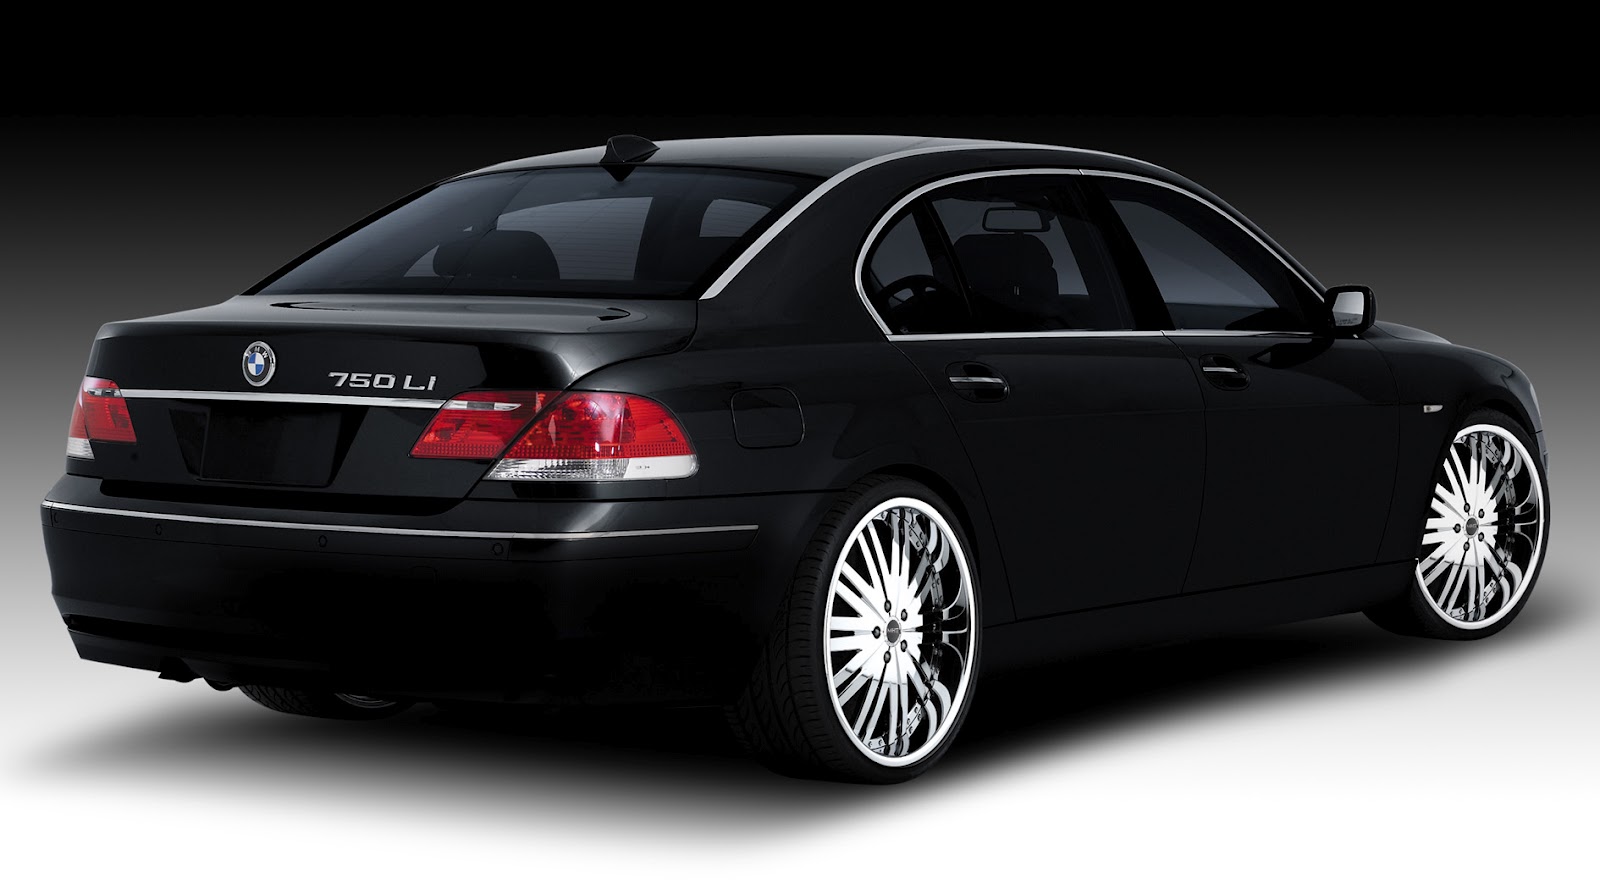 http://1.bp.blogspot.com/-JGC8Fm1msSE/T92Isbkc4SI/AAAAAAAAAEk/4PajAniwLoc/s1600/BMW-7-Series-black.jpg